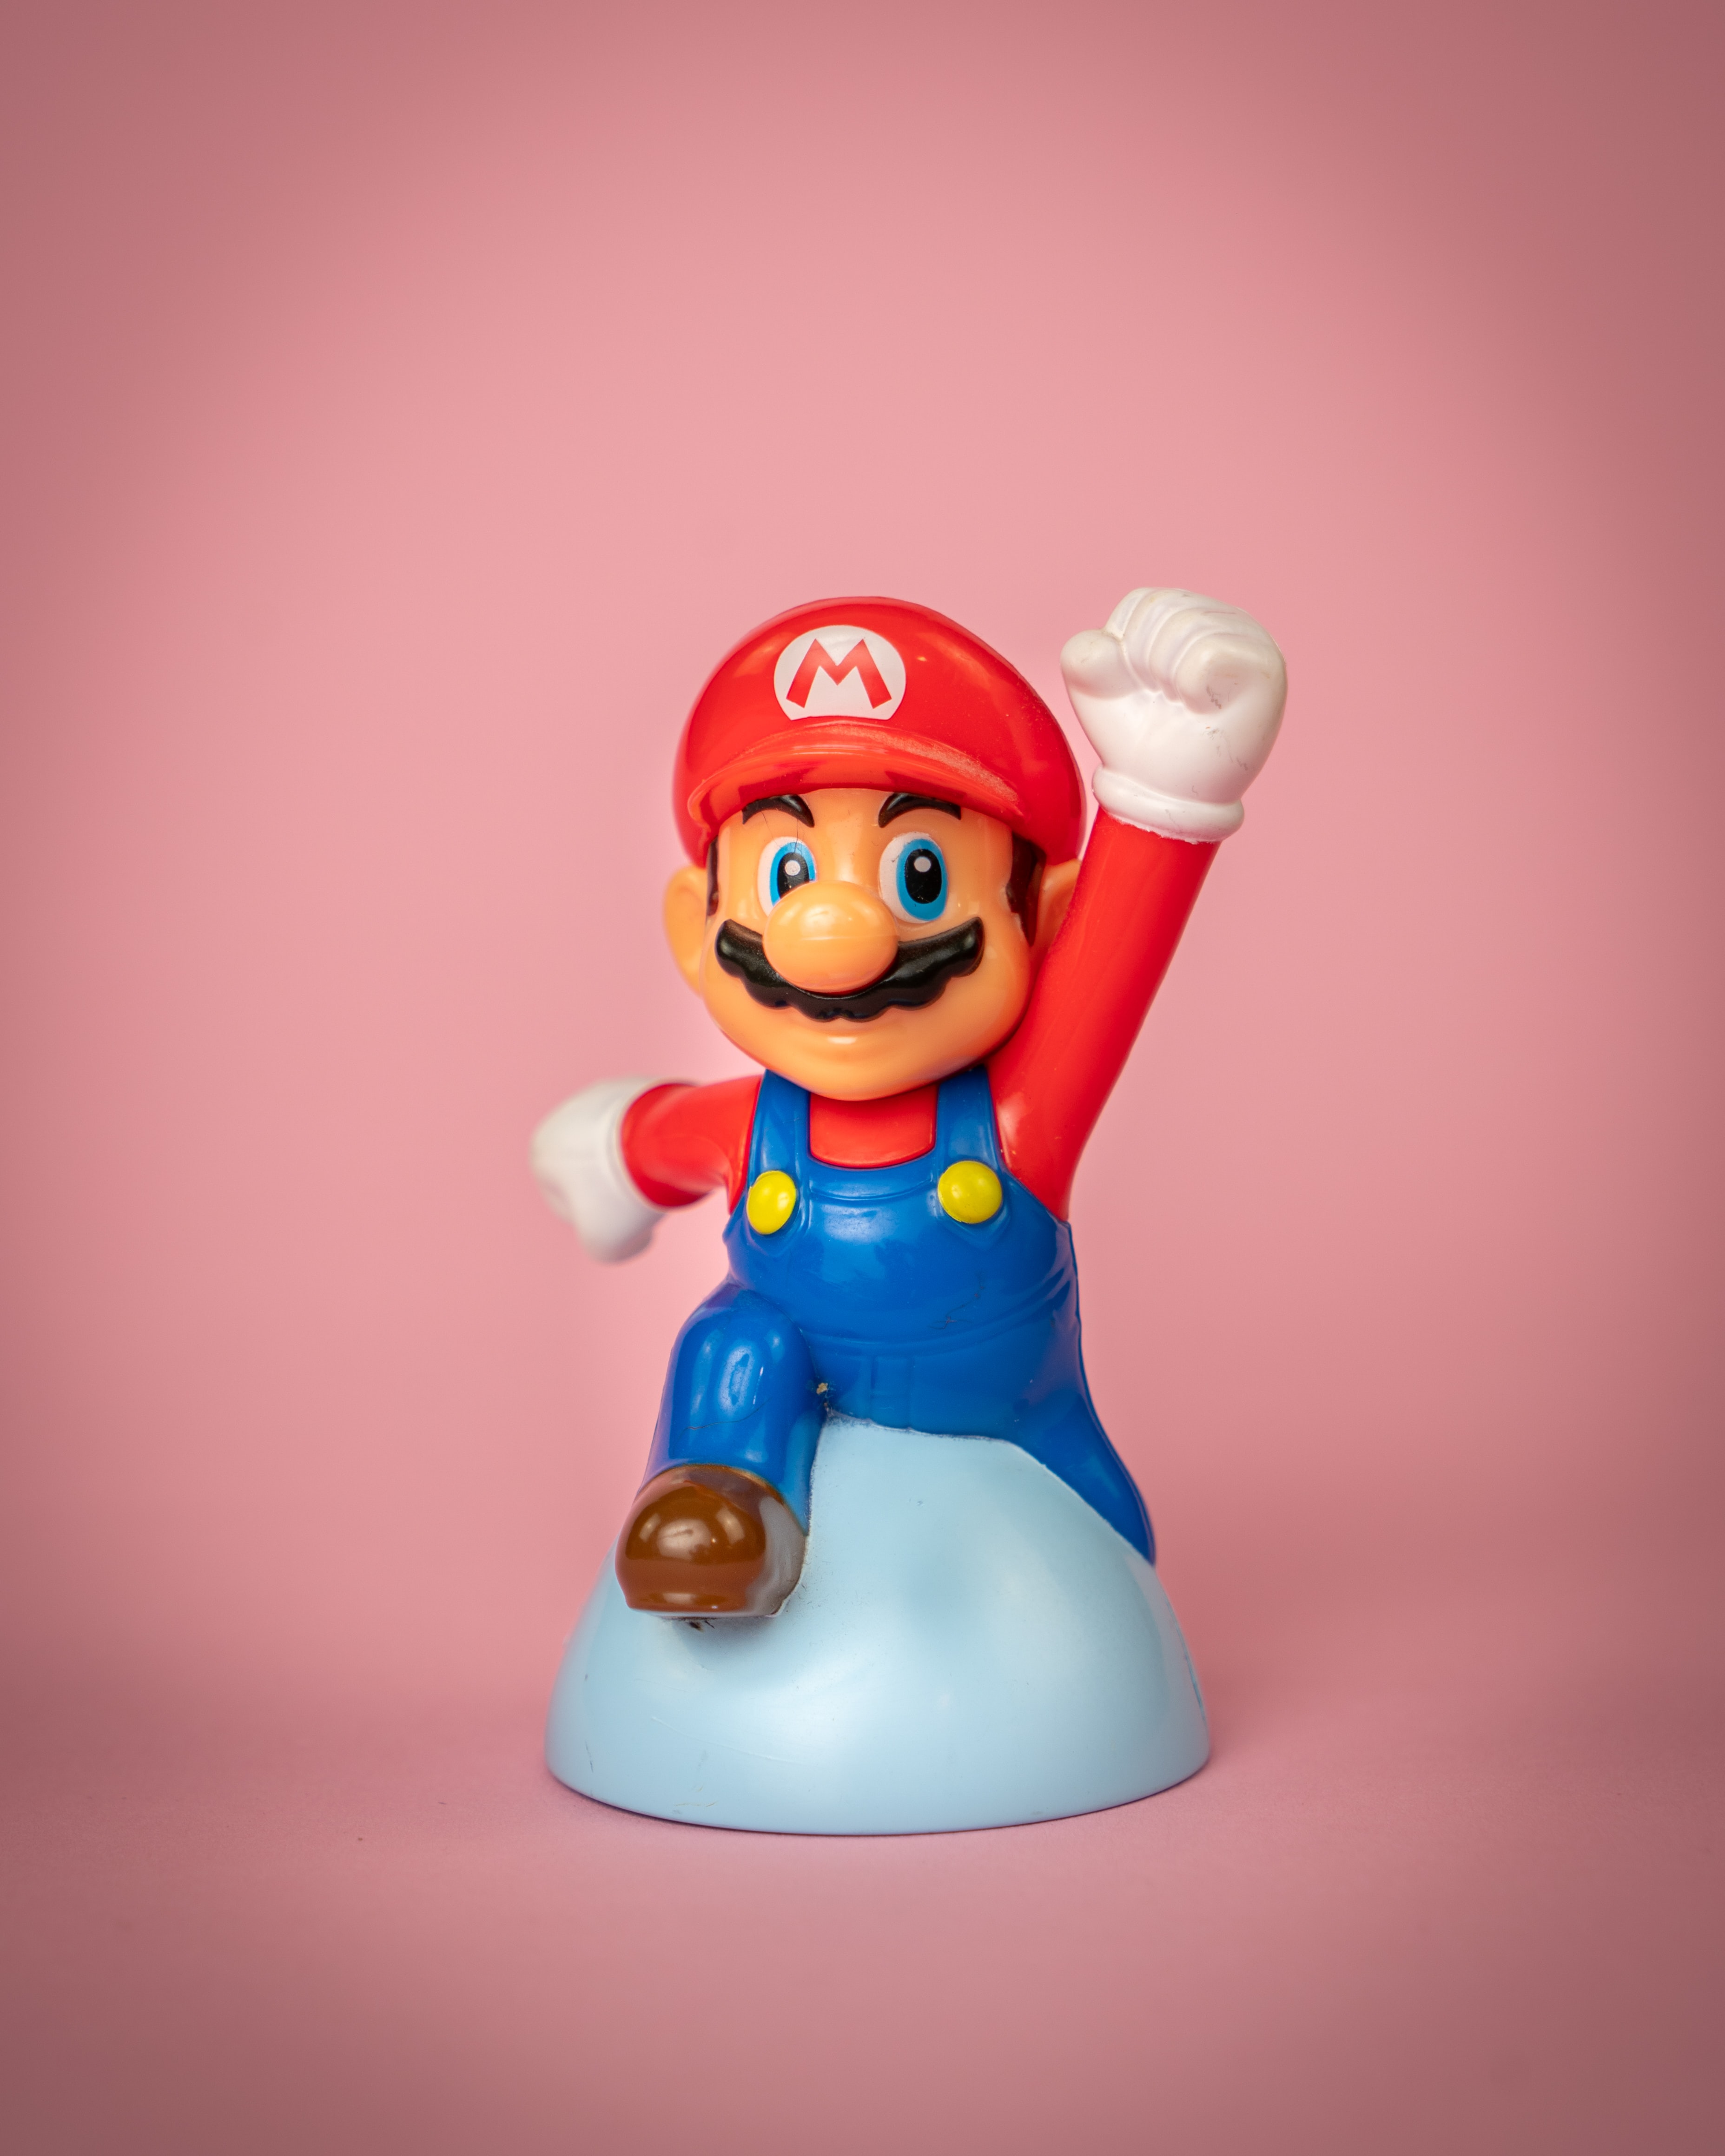 Super Mario restaurant